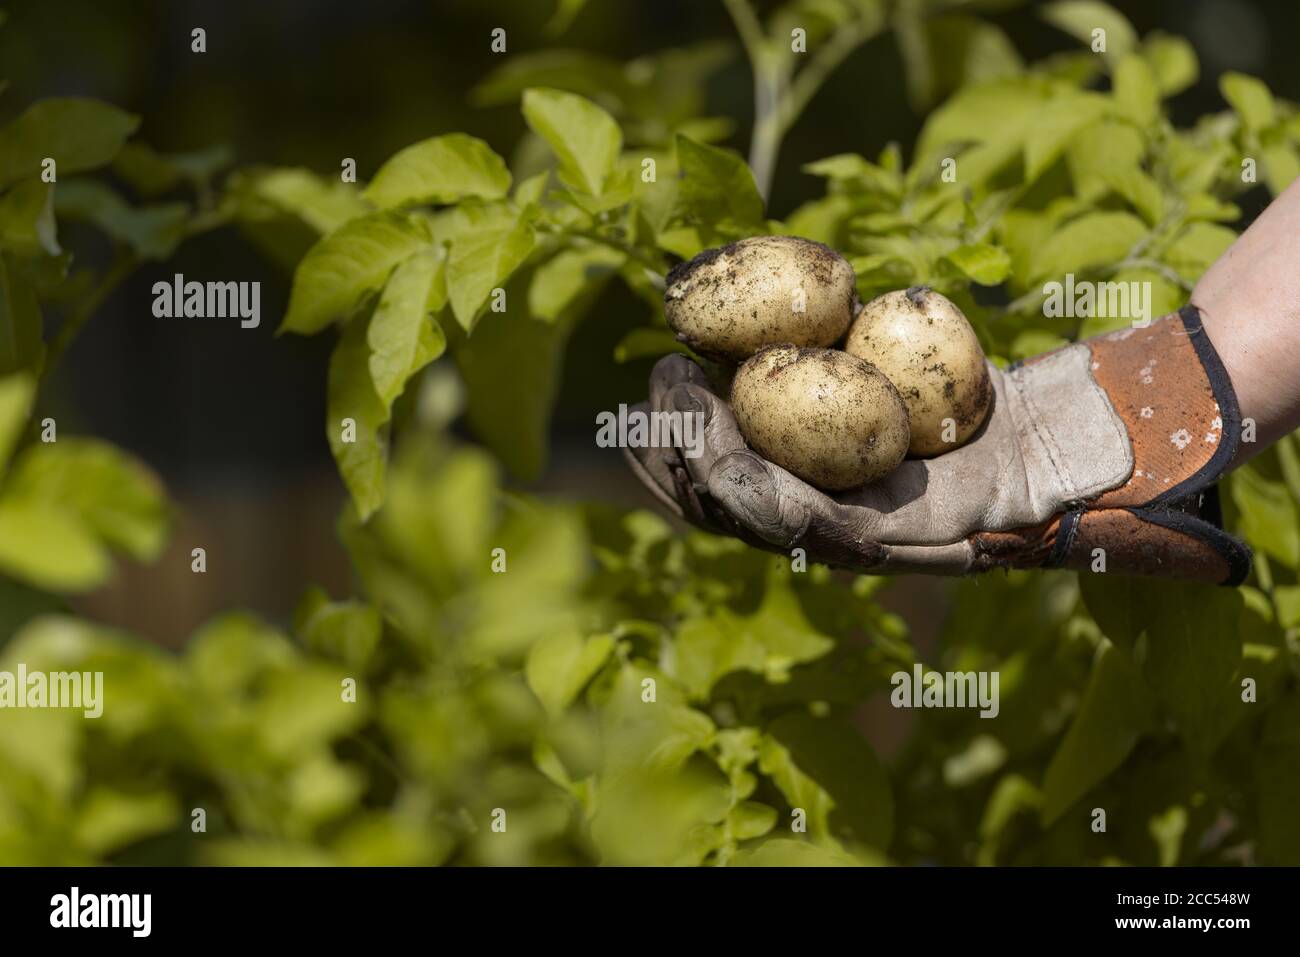 Pommes de terre de semence plantées à la maison maintenues dans un jardin main gantée devant les feuilles jaunes vibrantes des plants de pommes de terre. Vue latérale Banque D'Images